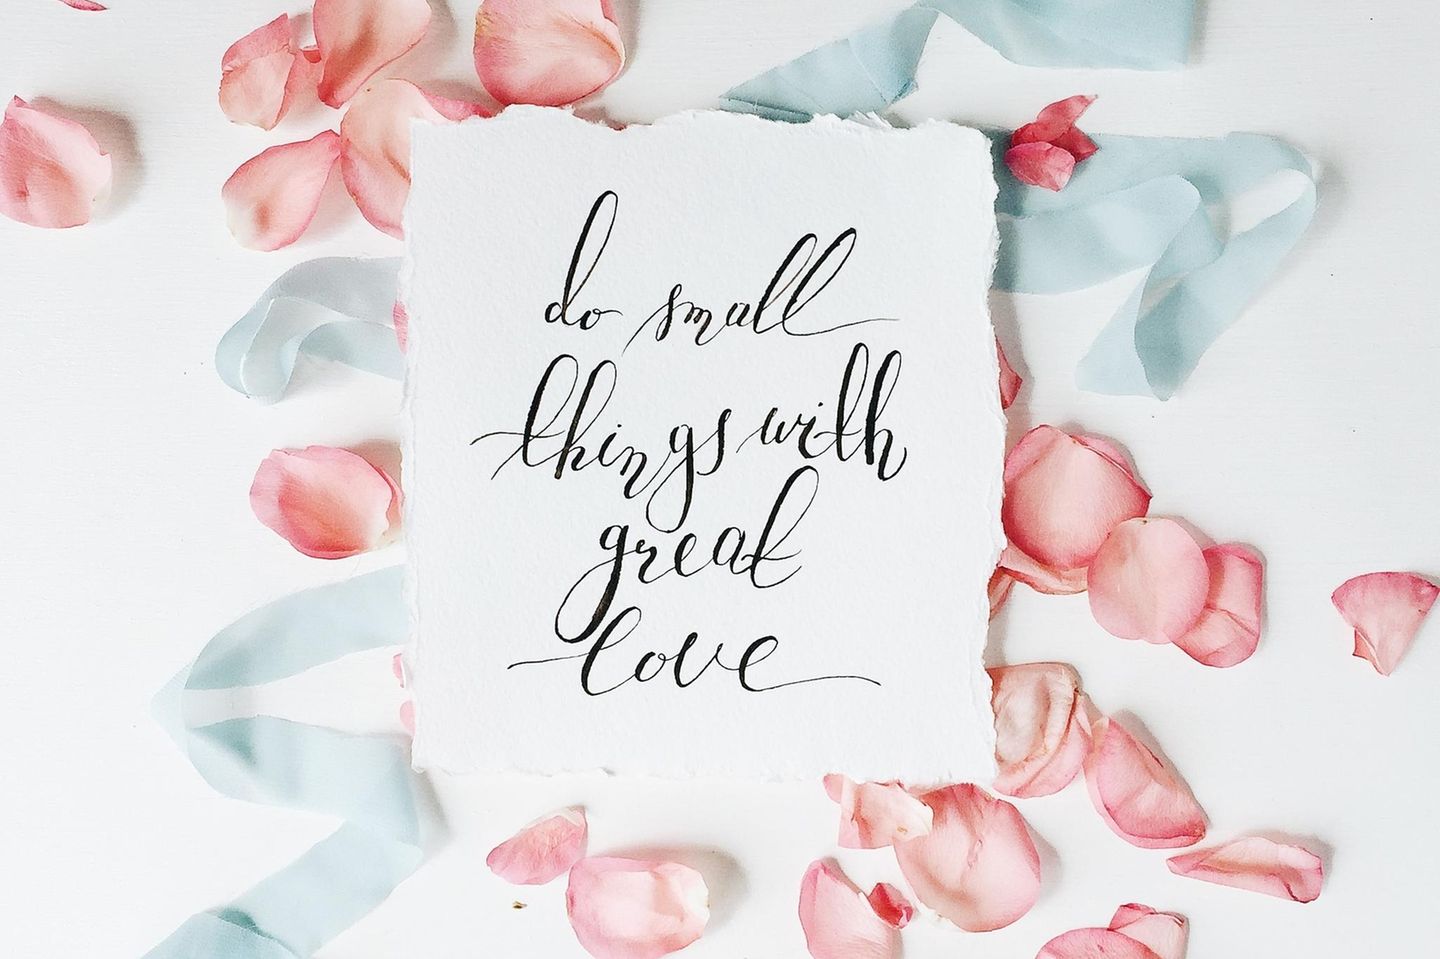 Glückwünsche zur Hochzeit: Ein Zettel mit der Botschaft "do small things with great love"